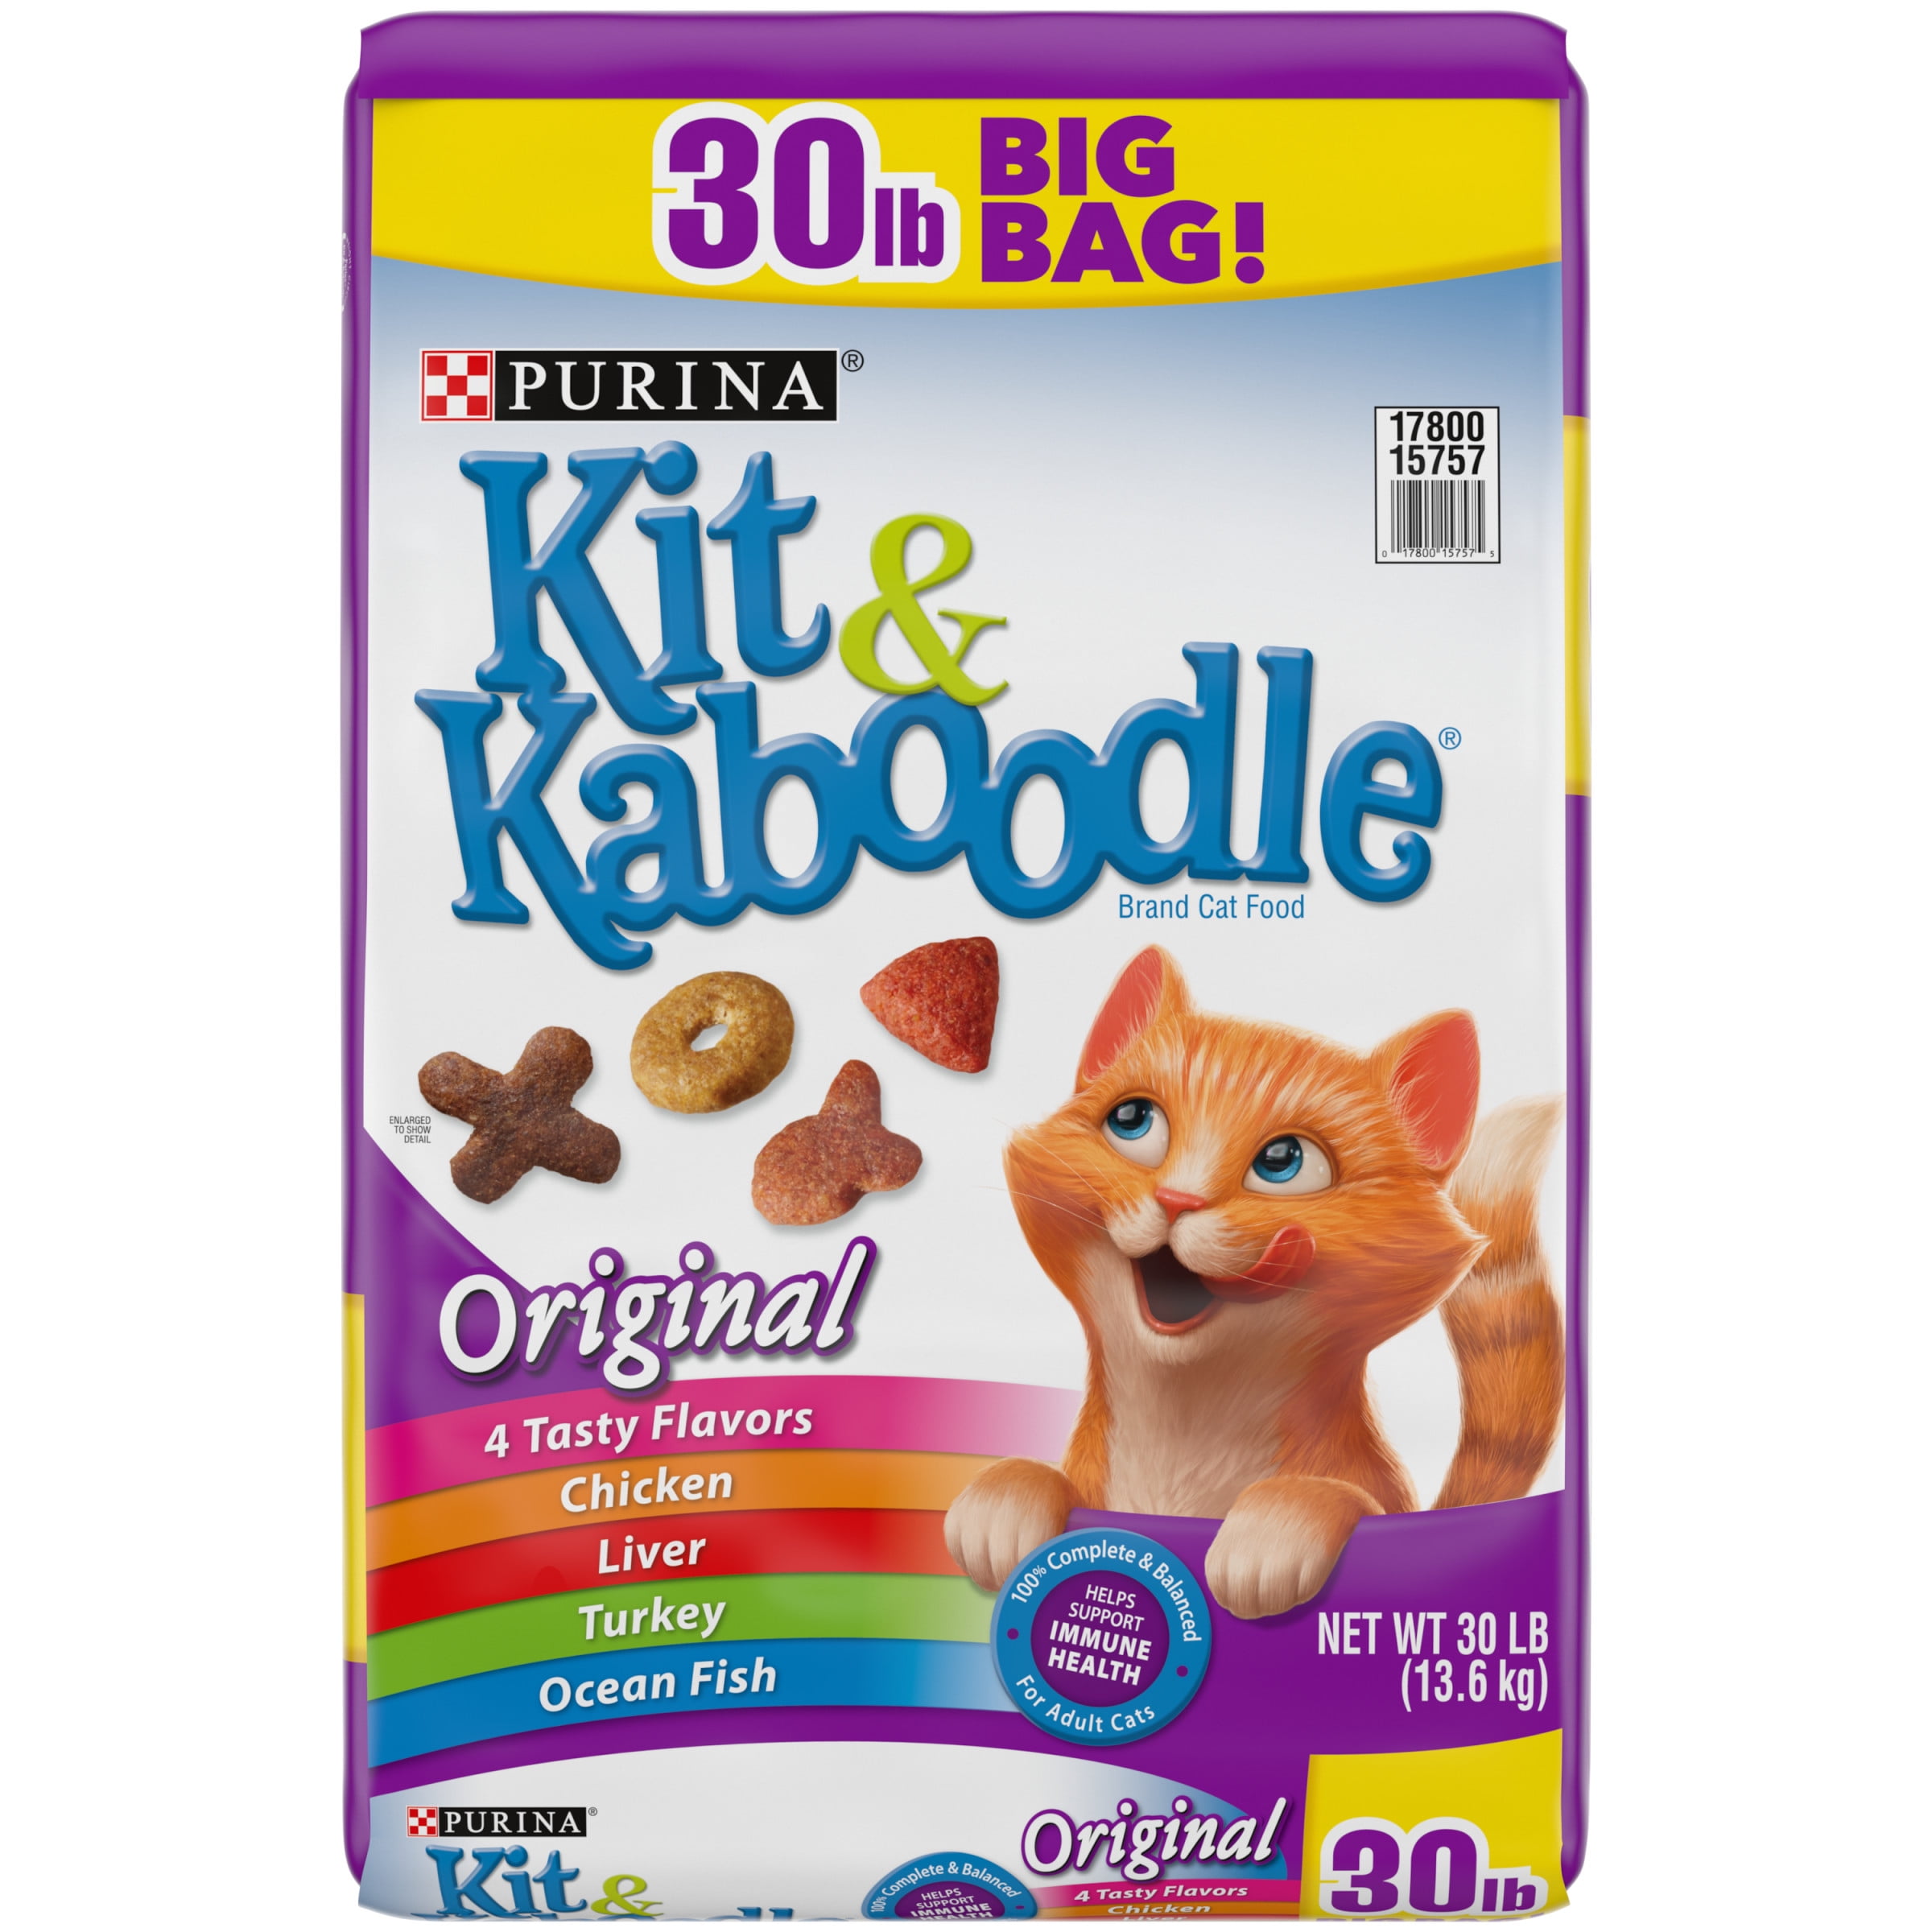 Purina Kit & Kaboodle Origina Dry Cat Food, 30 lb Bag